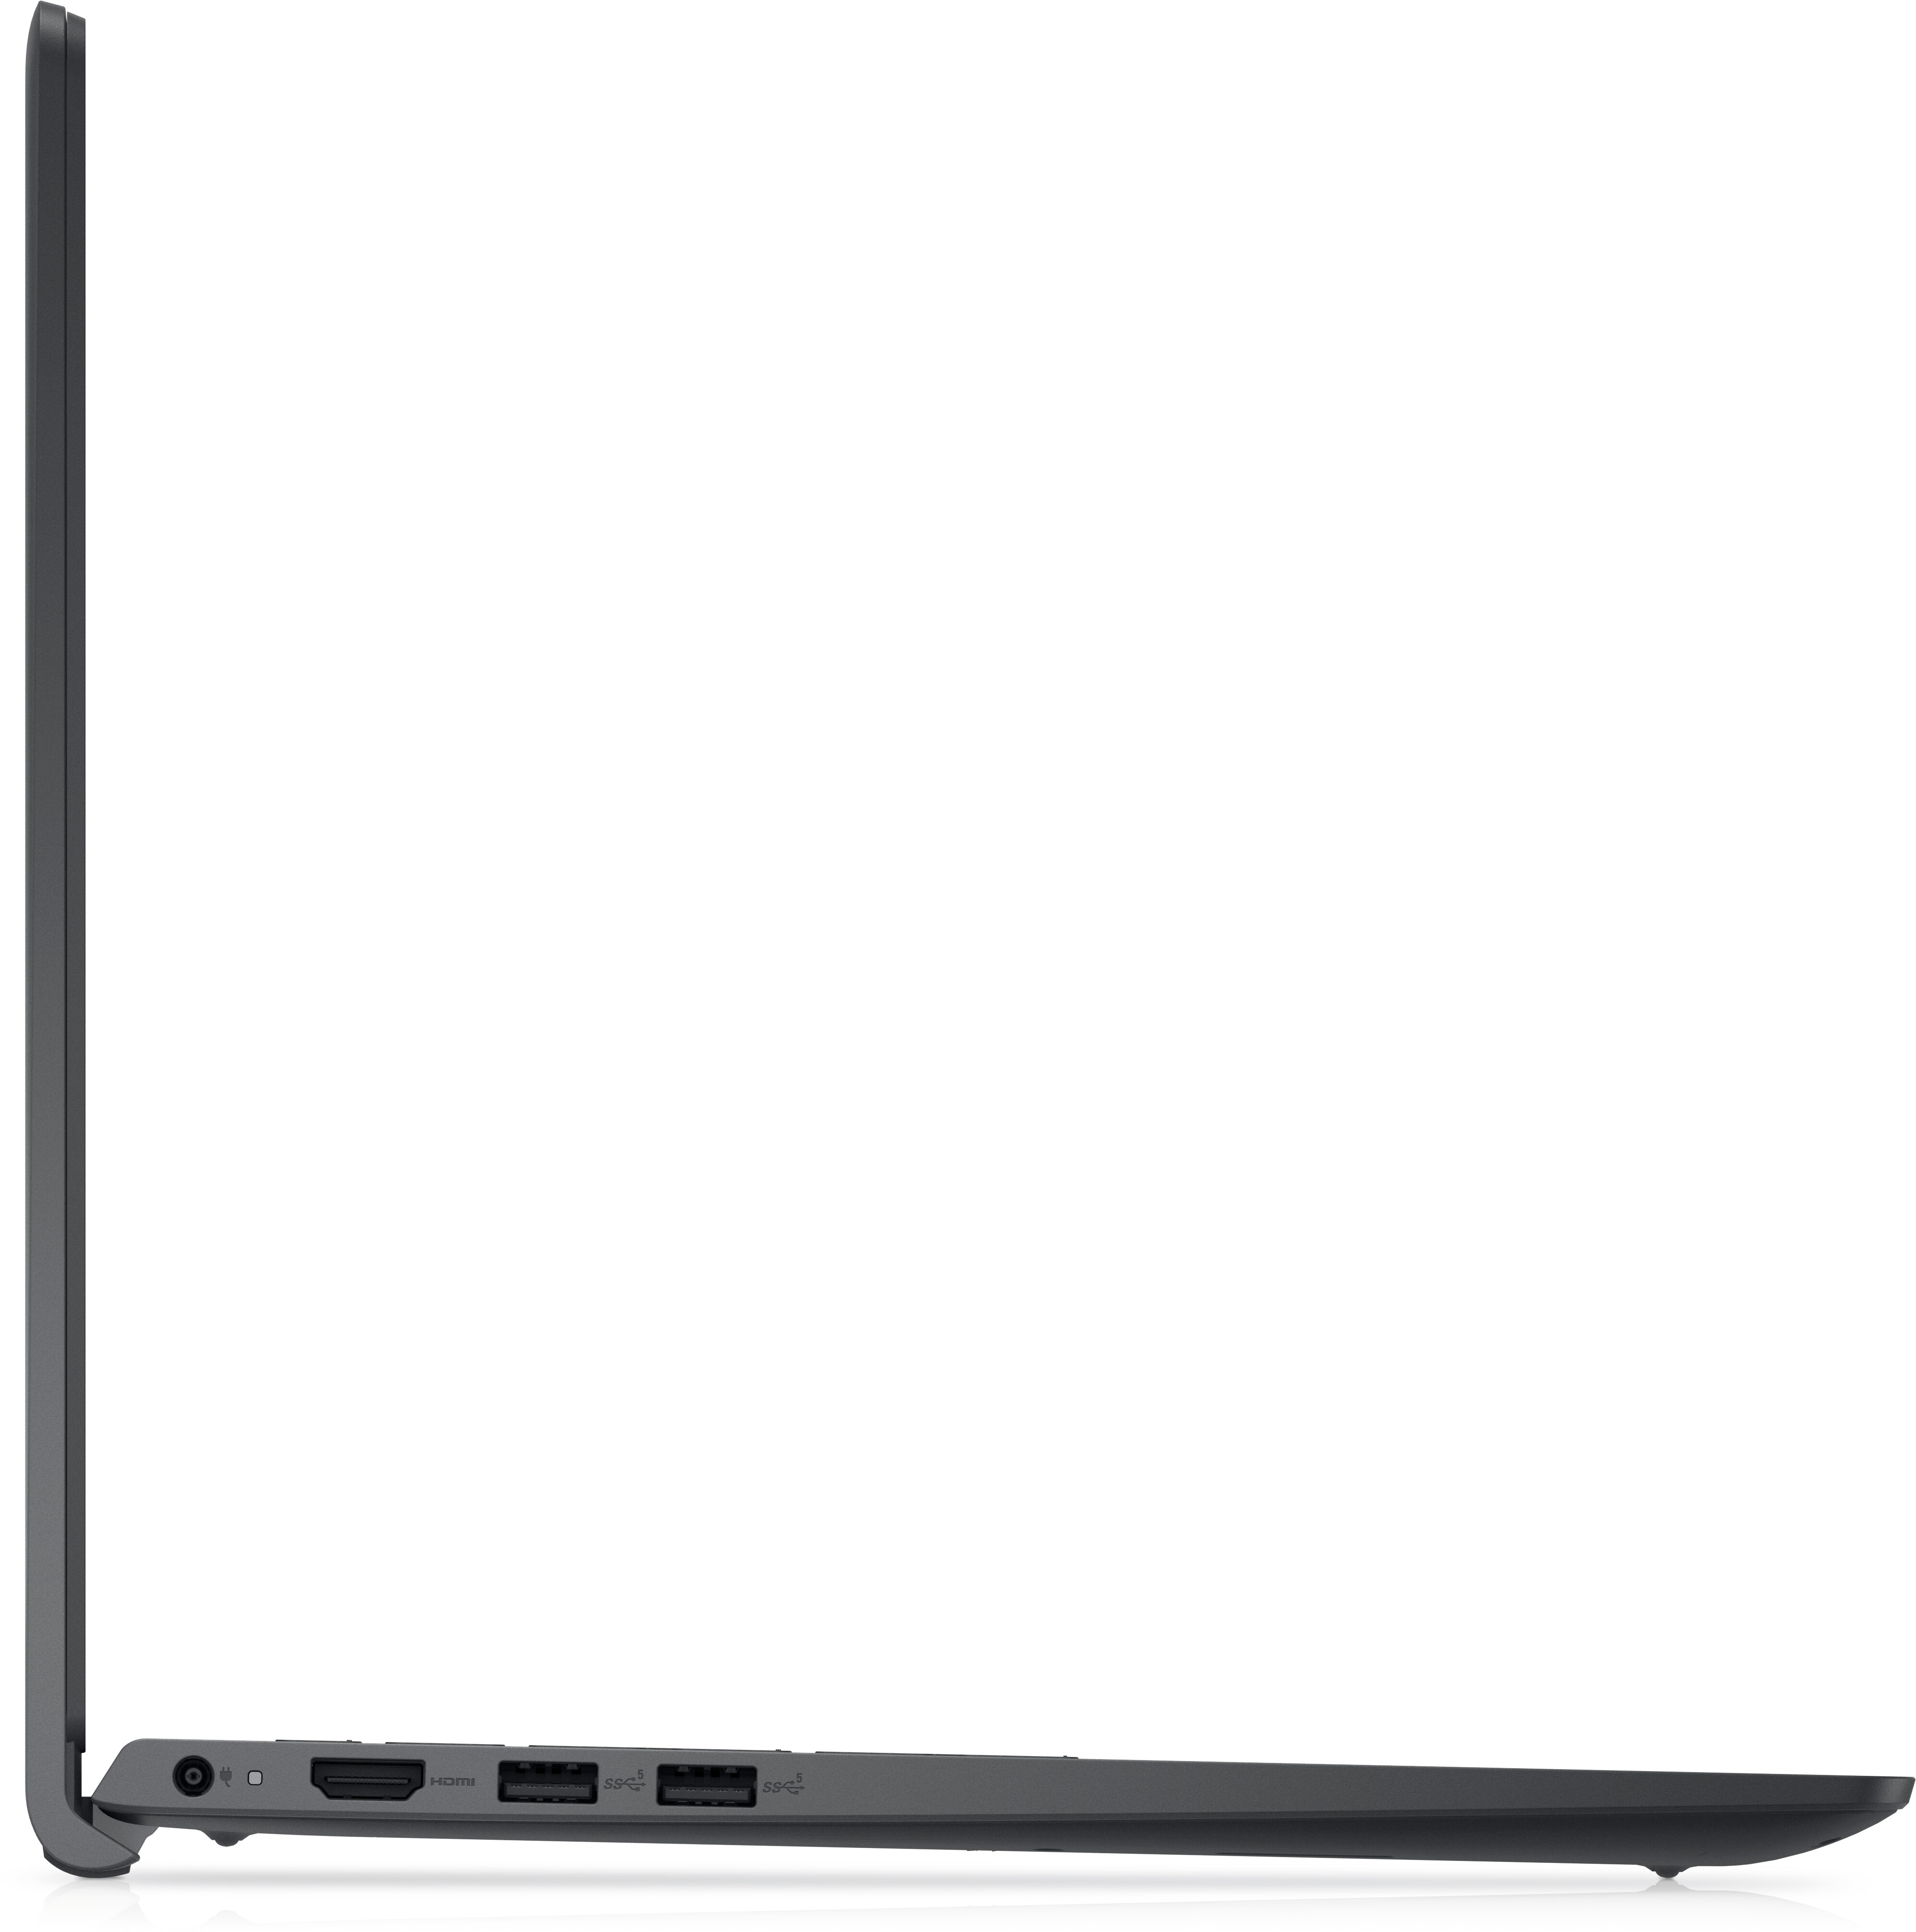 Test Dell Inspiron 15 3511 : un PC portable capable du meilleur comme du  pire - Les Numériques